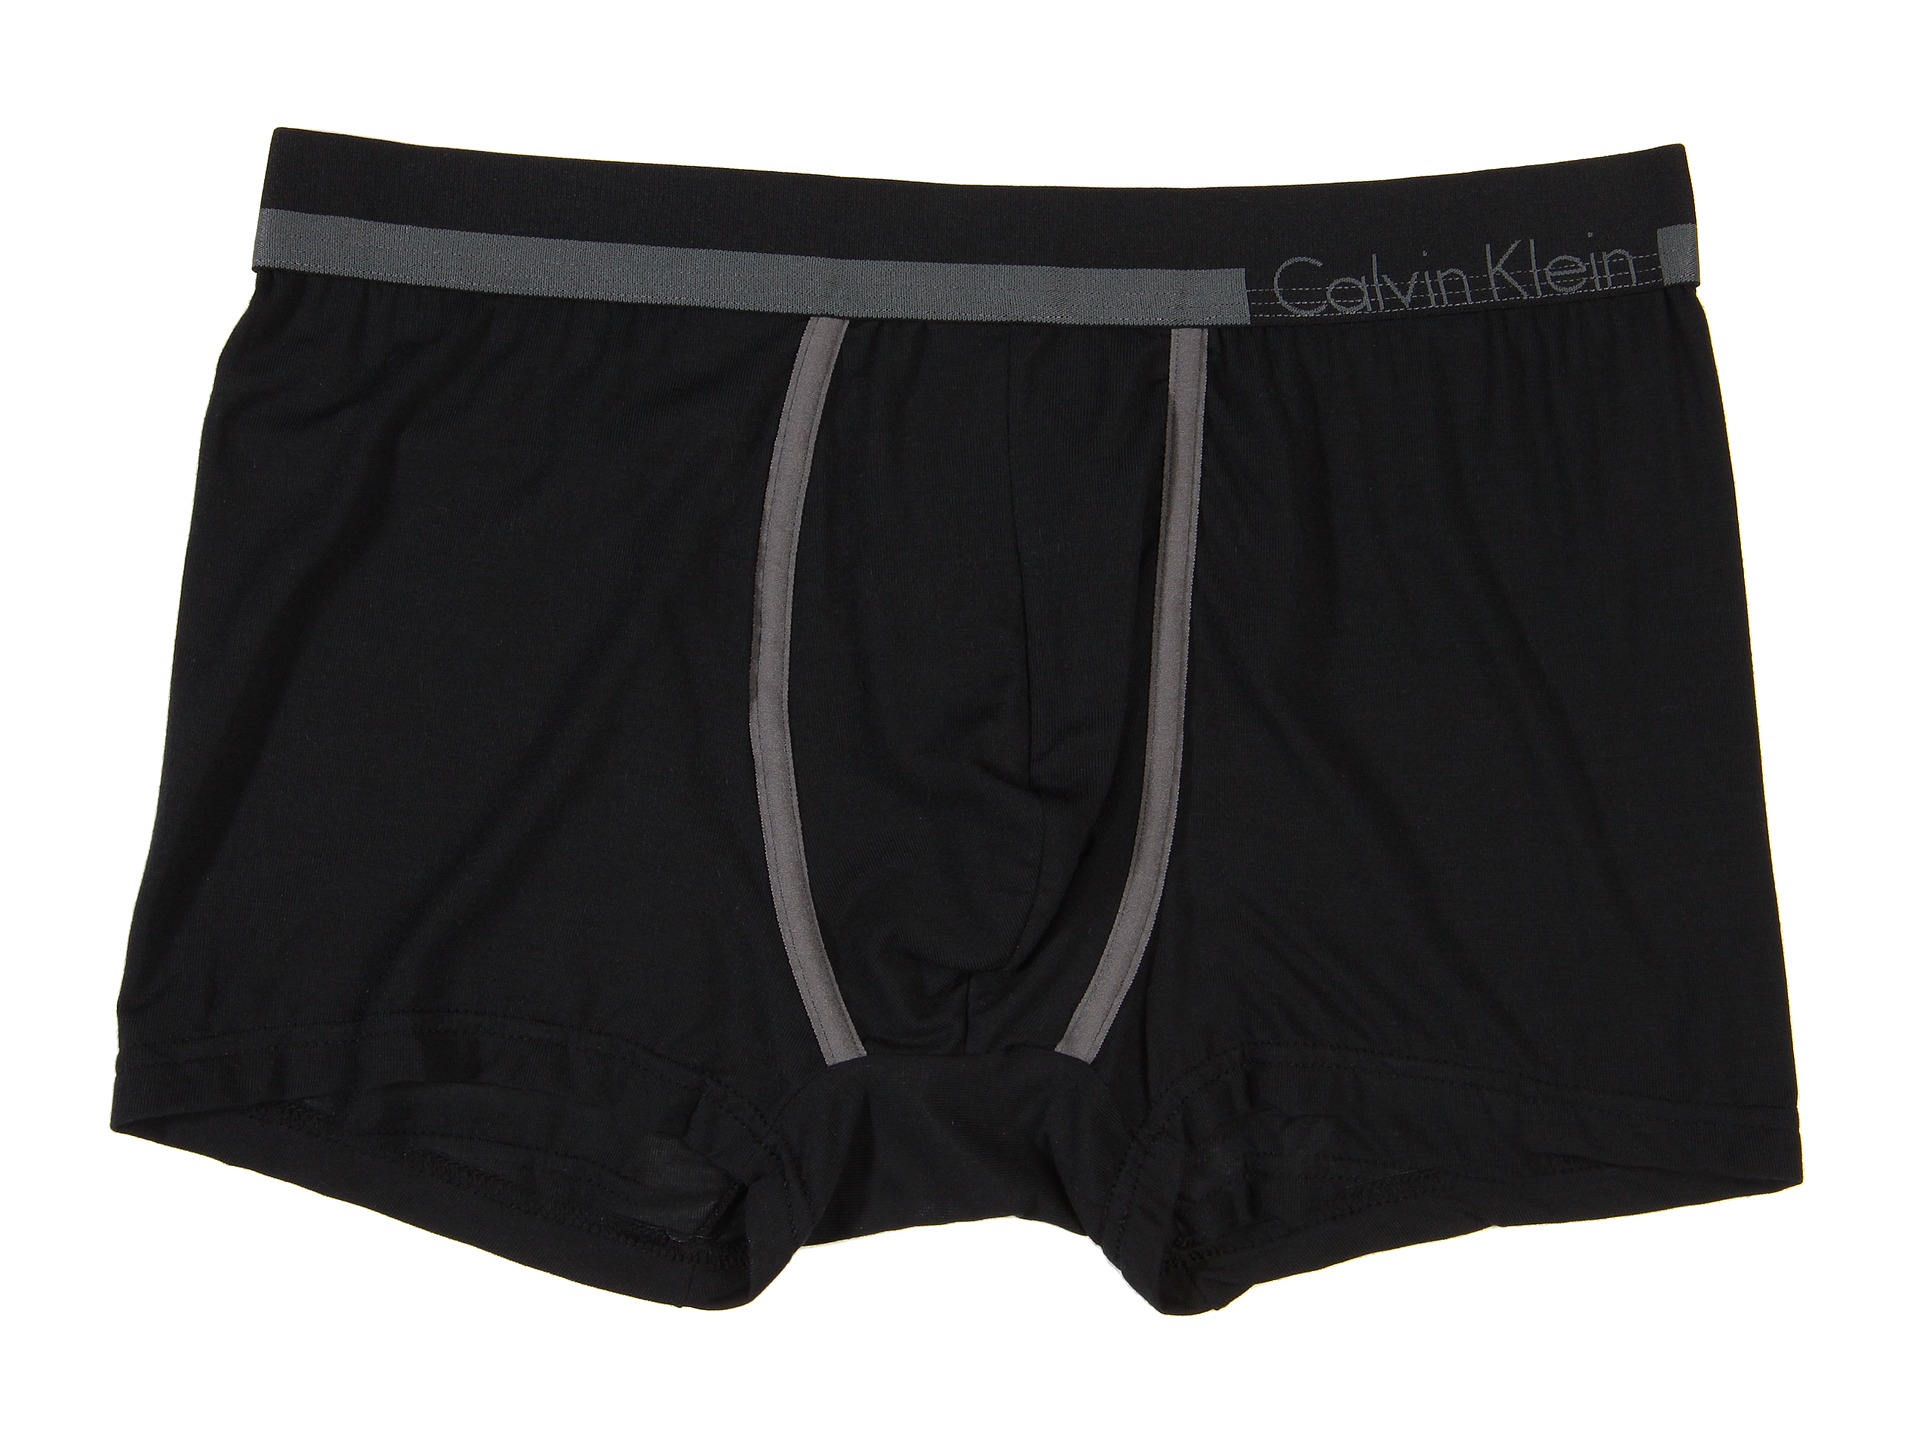 calvin klein underwear body brief black, Clothing, Men at 